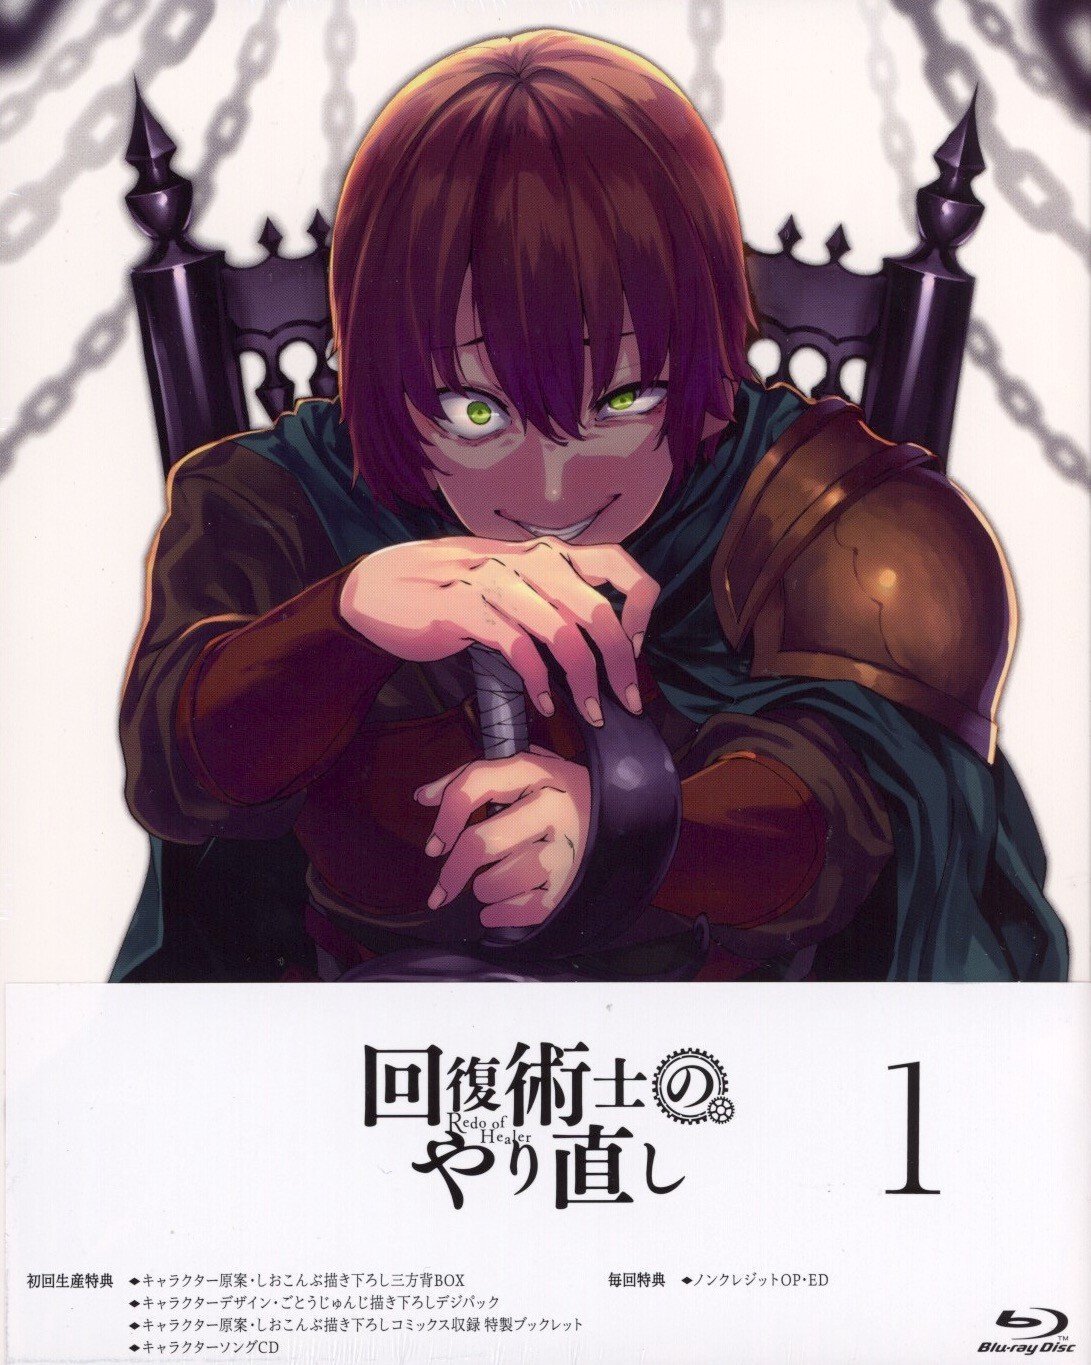 Kaifuku jutsushi no yarinaoshi Redo OF healer manga book Vol 1 to